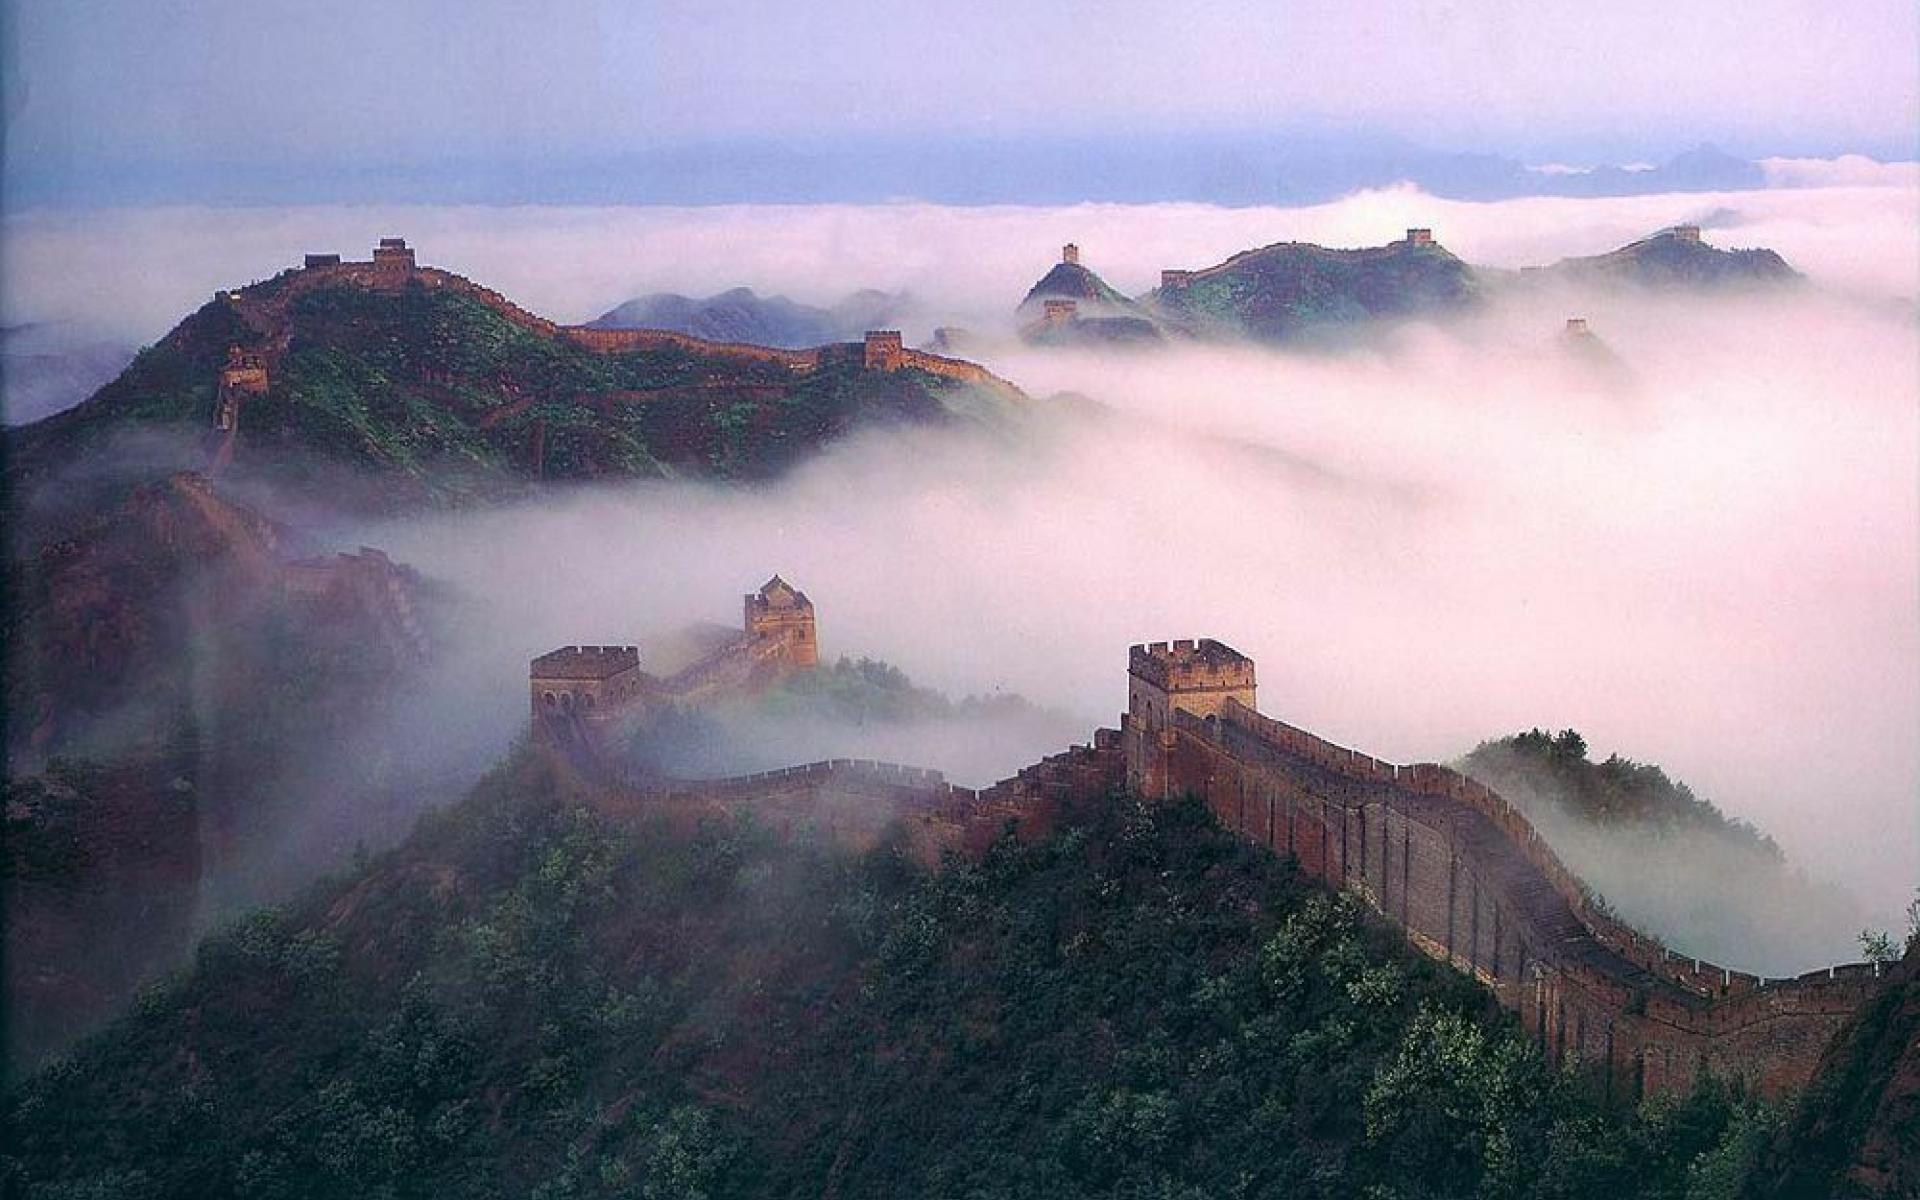 93+] Great Wall Of China HD Wallpapers - WallpaperSafari